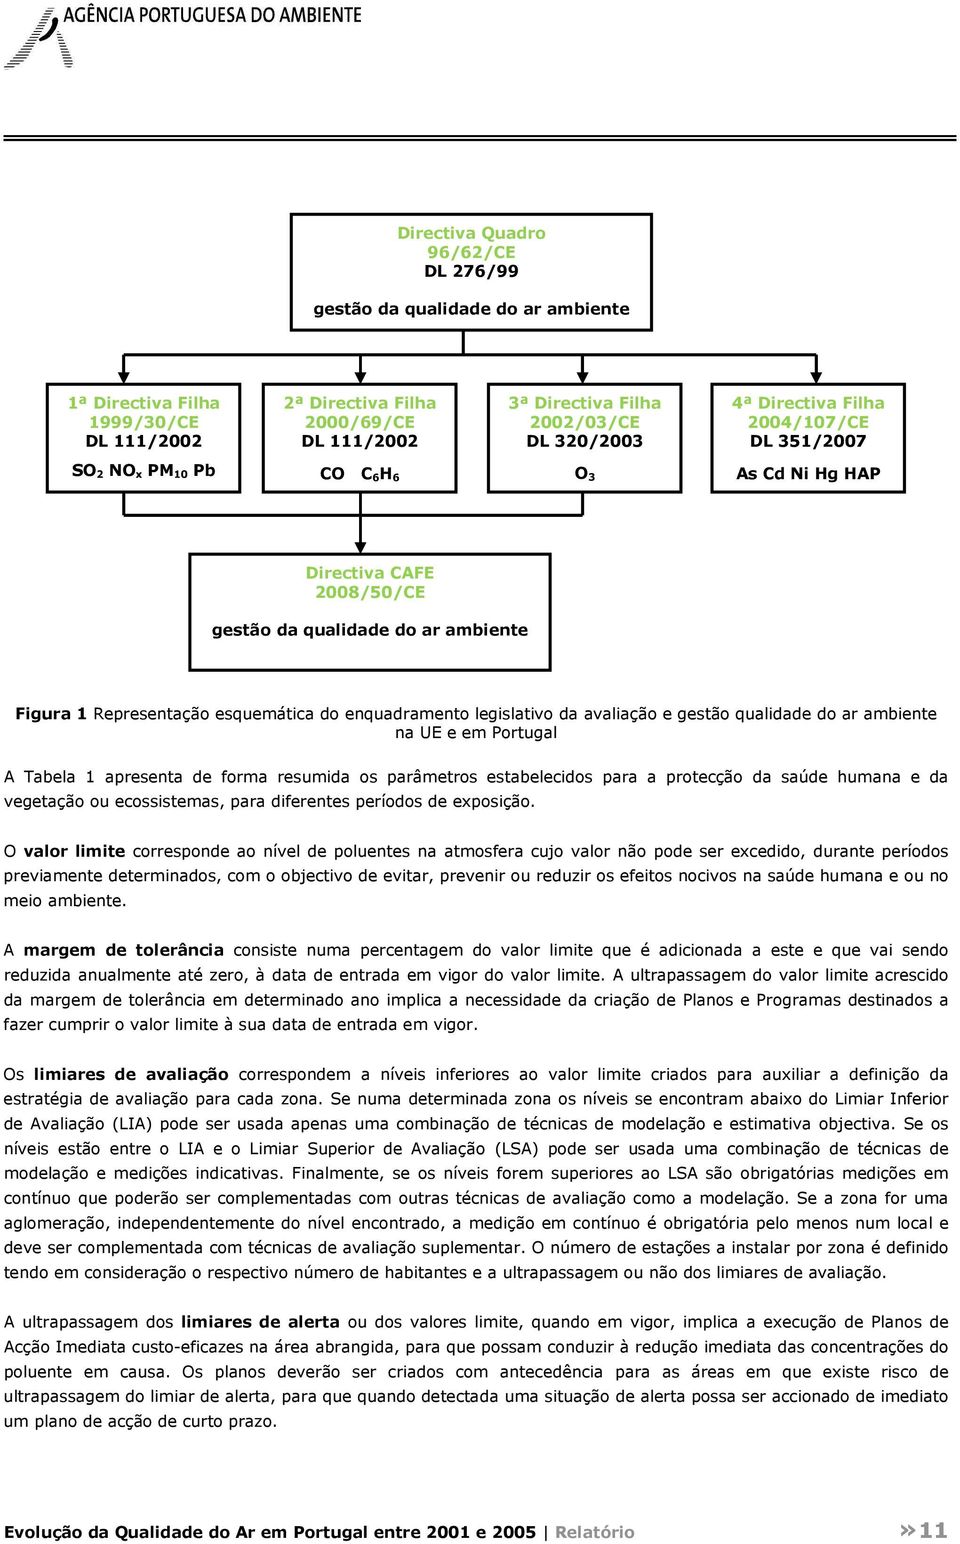 avaliação e gestão qualidade do ar ambiente na UE e em Portugal A Tabela 1 apresenta de forma resumida os parâmetros estabelecidos para a protecção da saúde humana e da vegetação ou ecossistemas,